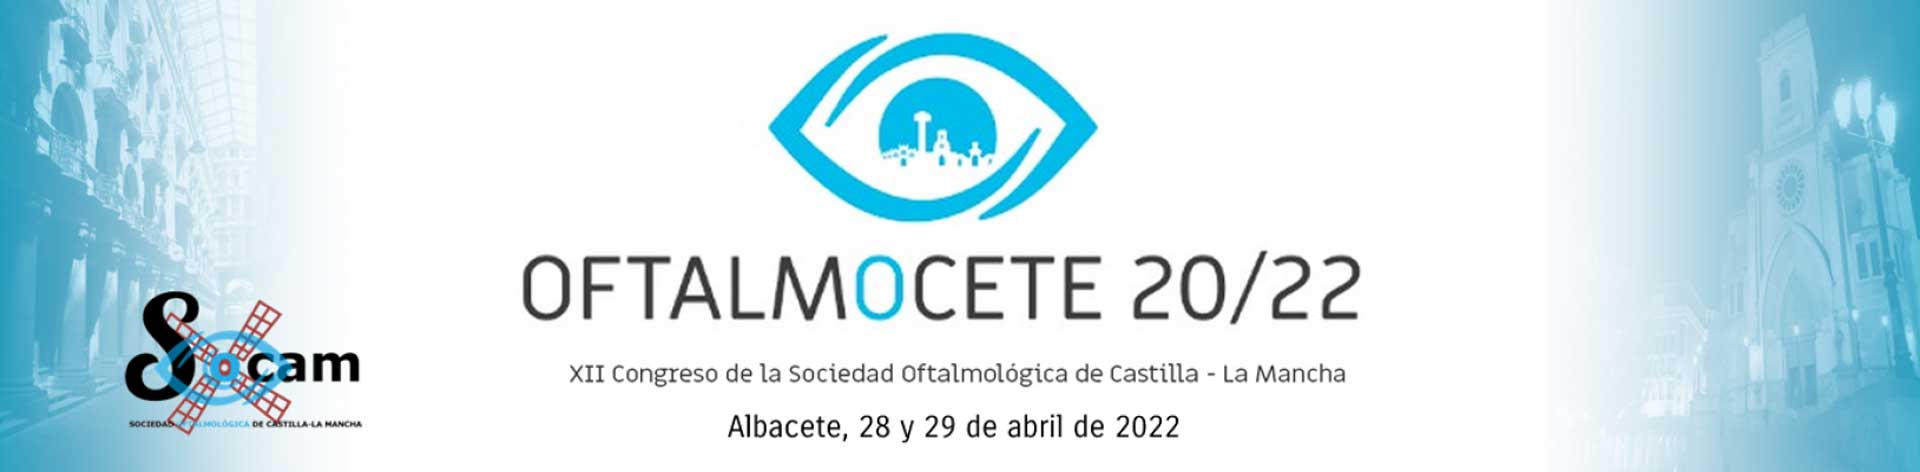 XII Congreso del SOCAM. Cuenca 2020-22.